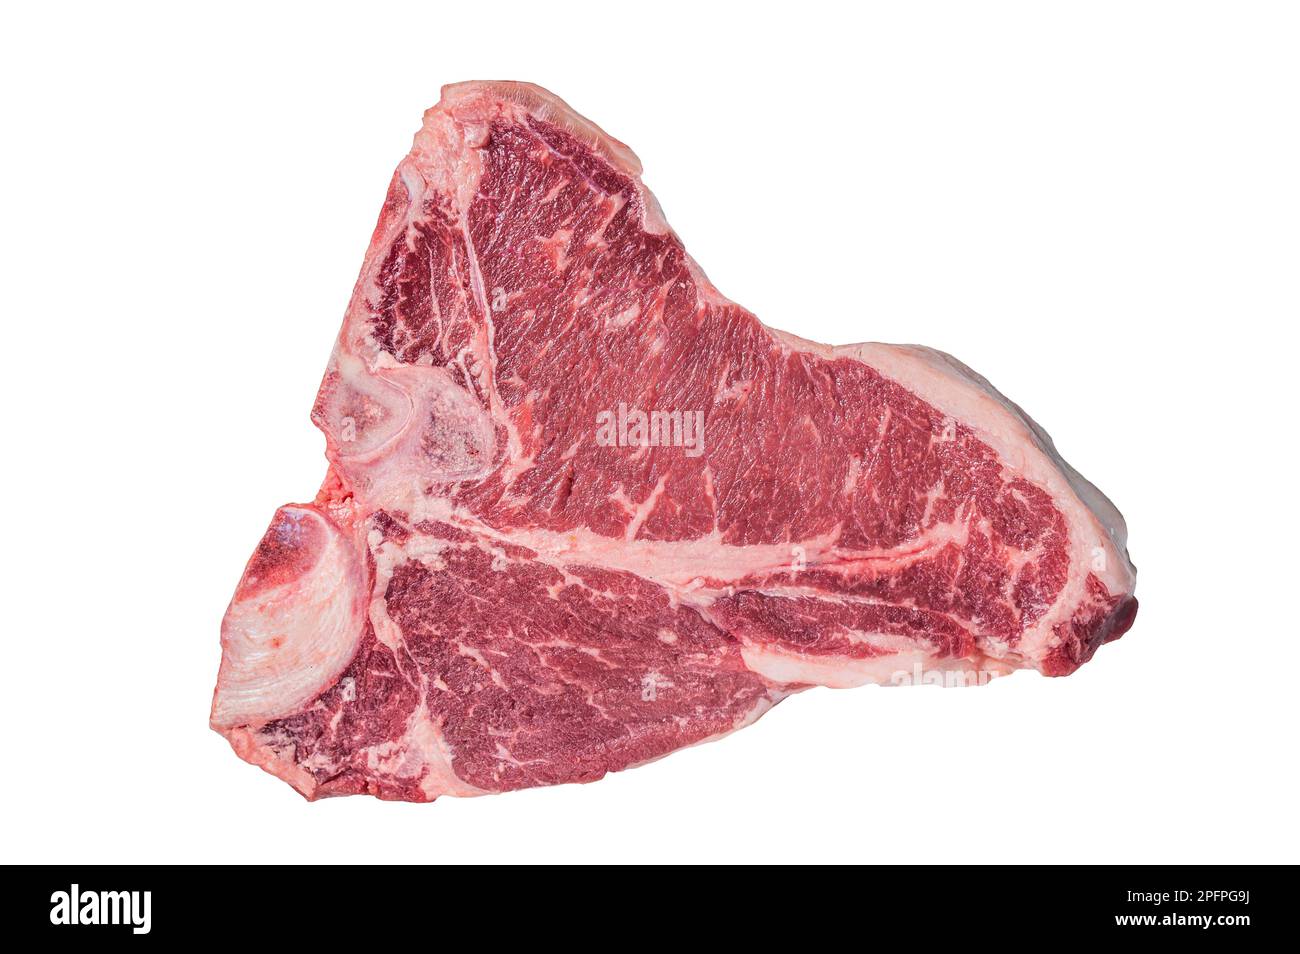 Viande de bœuf brute Porterhouse T-bone Steak. Isolé sur fond blanc Banque D'Images